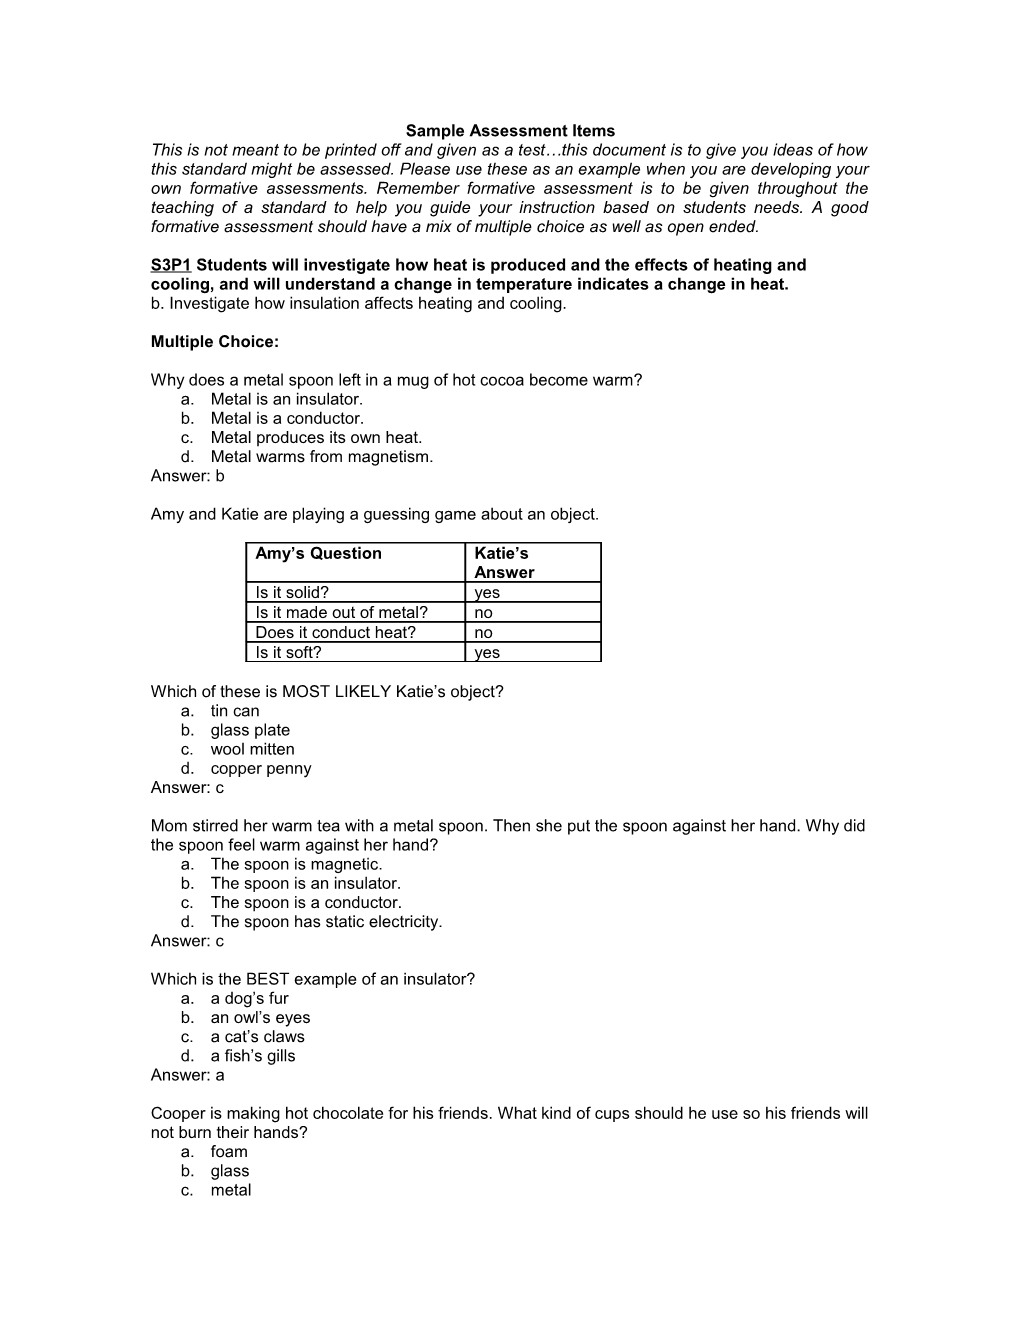 Sample Assessment Items s6